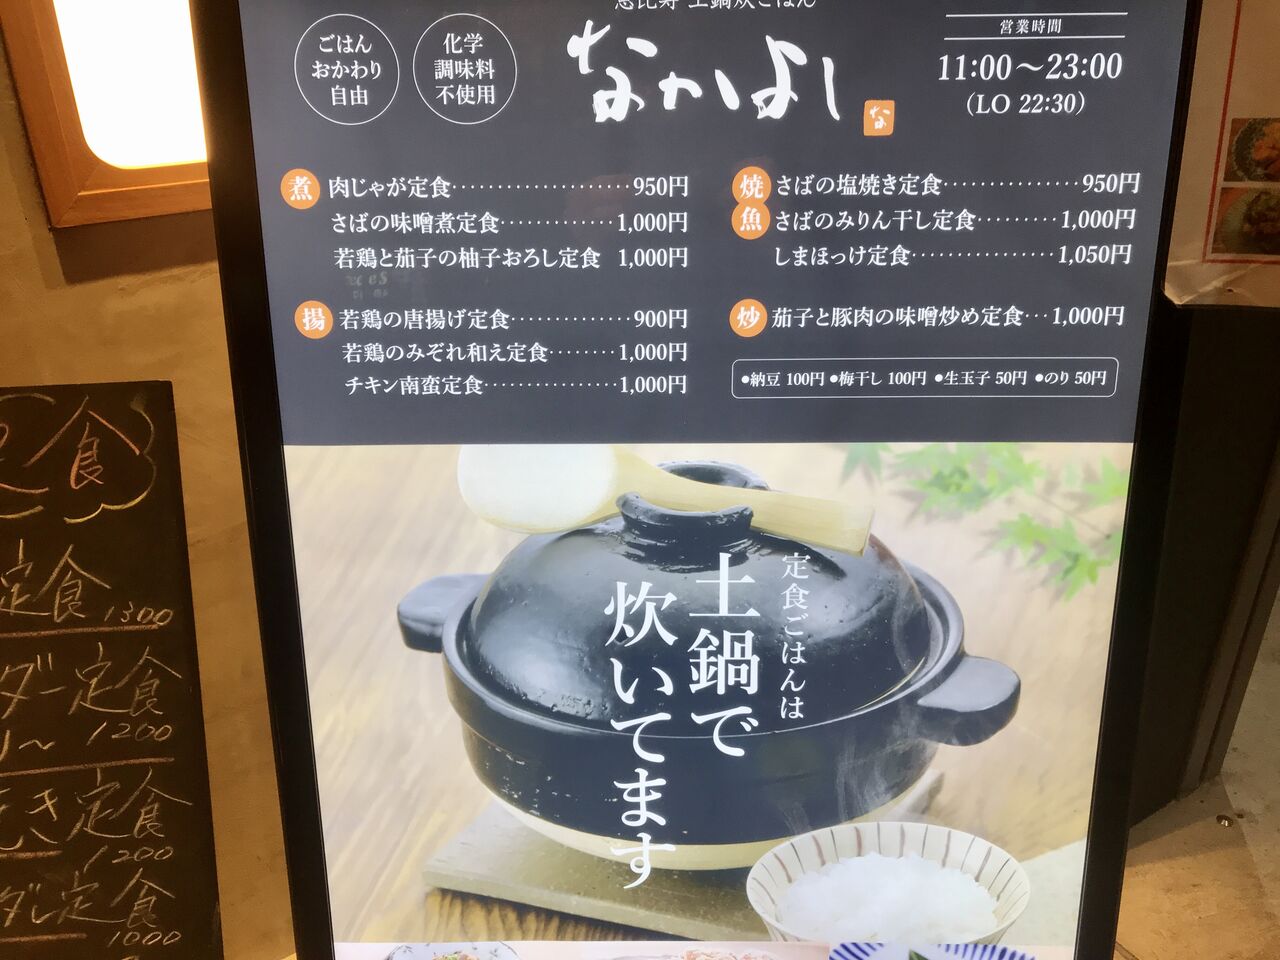 渋谷で定食が食べたいときは 土鍋ご飯がおかわり無料の なかよし がおすすめ まりこのblog